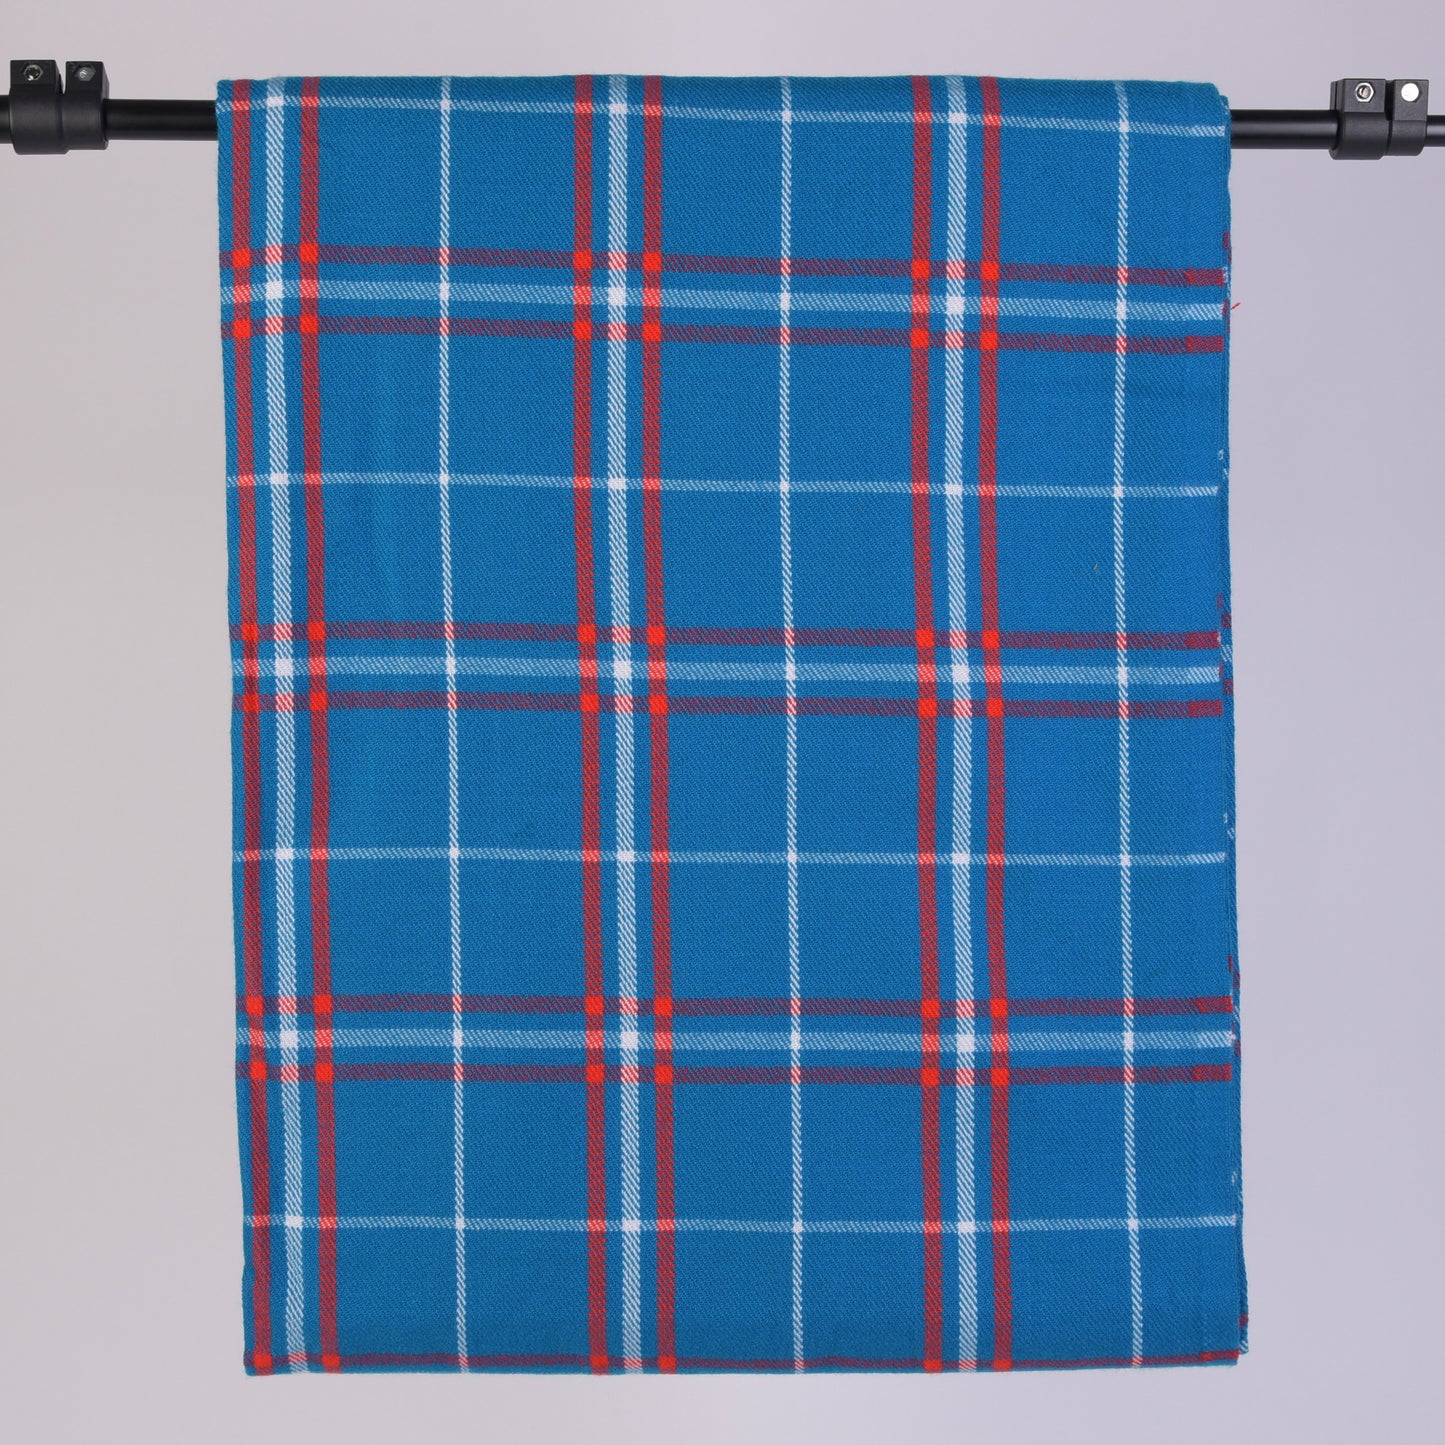 Maasai 'Shuka' Blanket